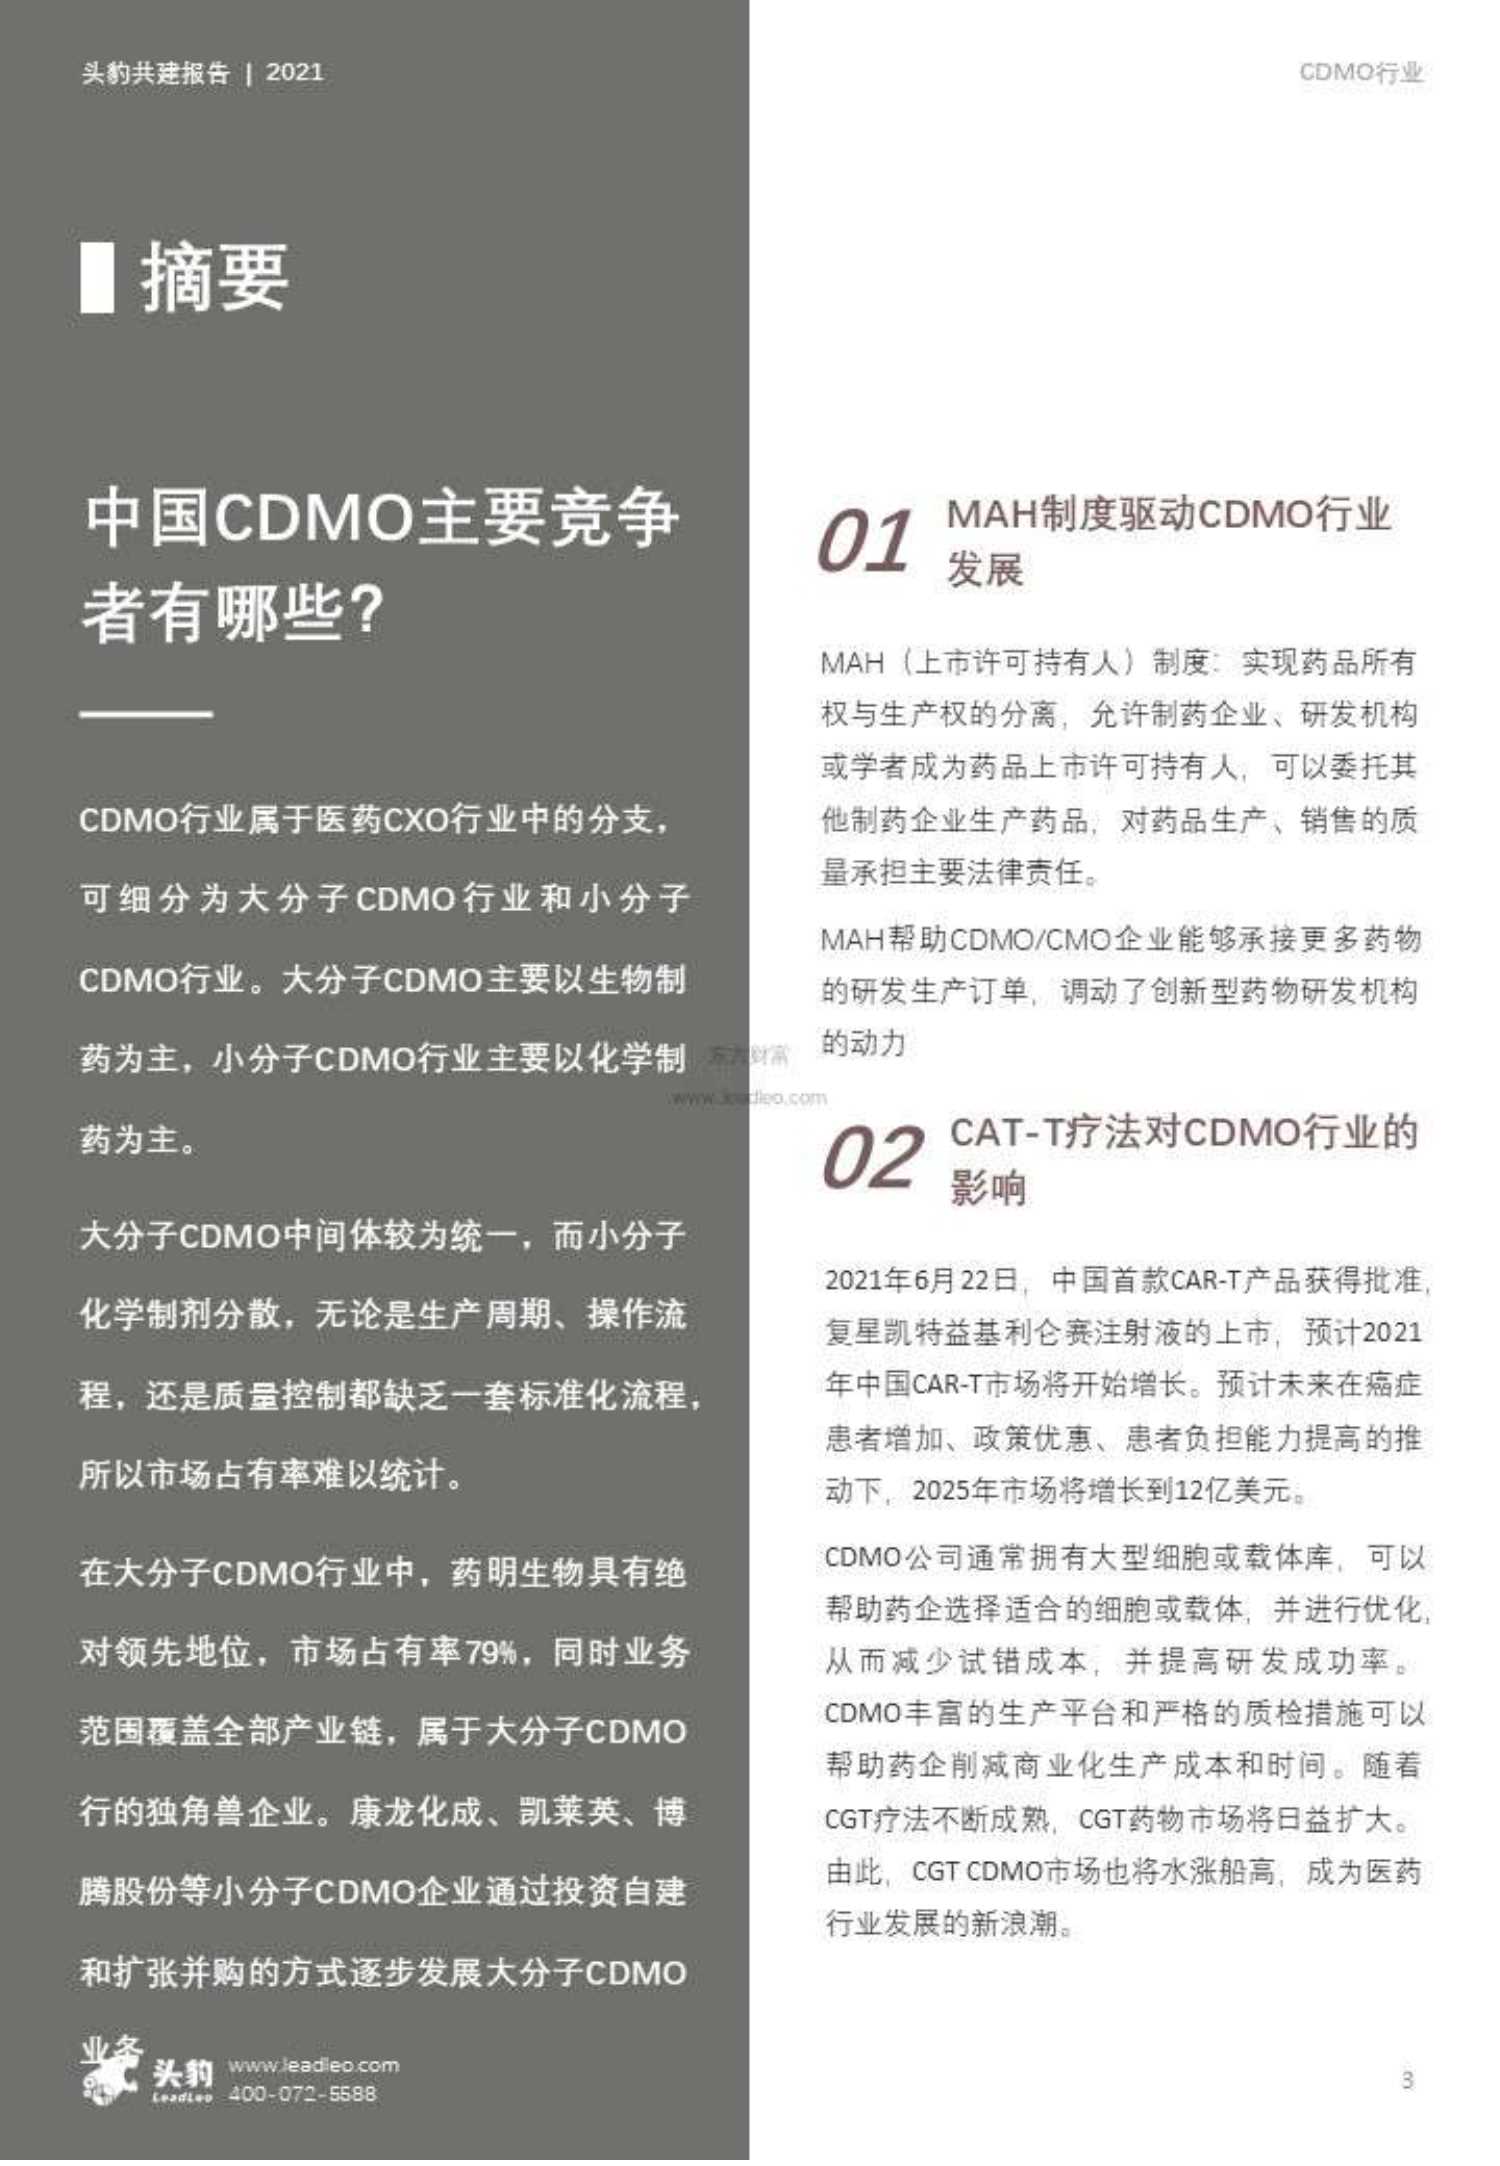 头豹研究院-2021年中国CDMO行业研究报告-2021.12-38页